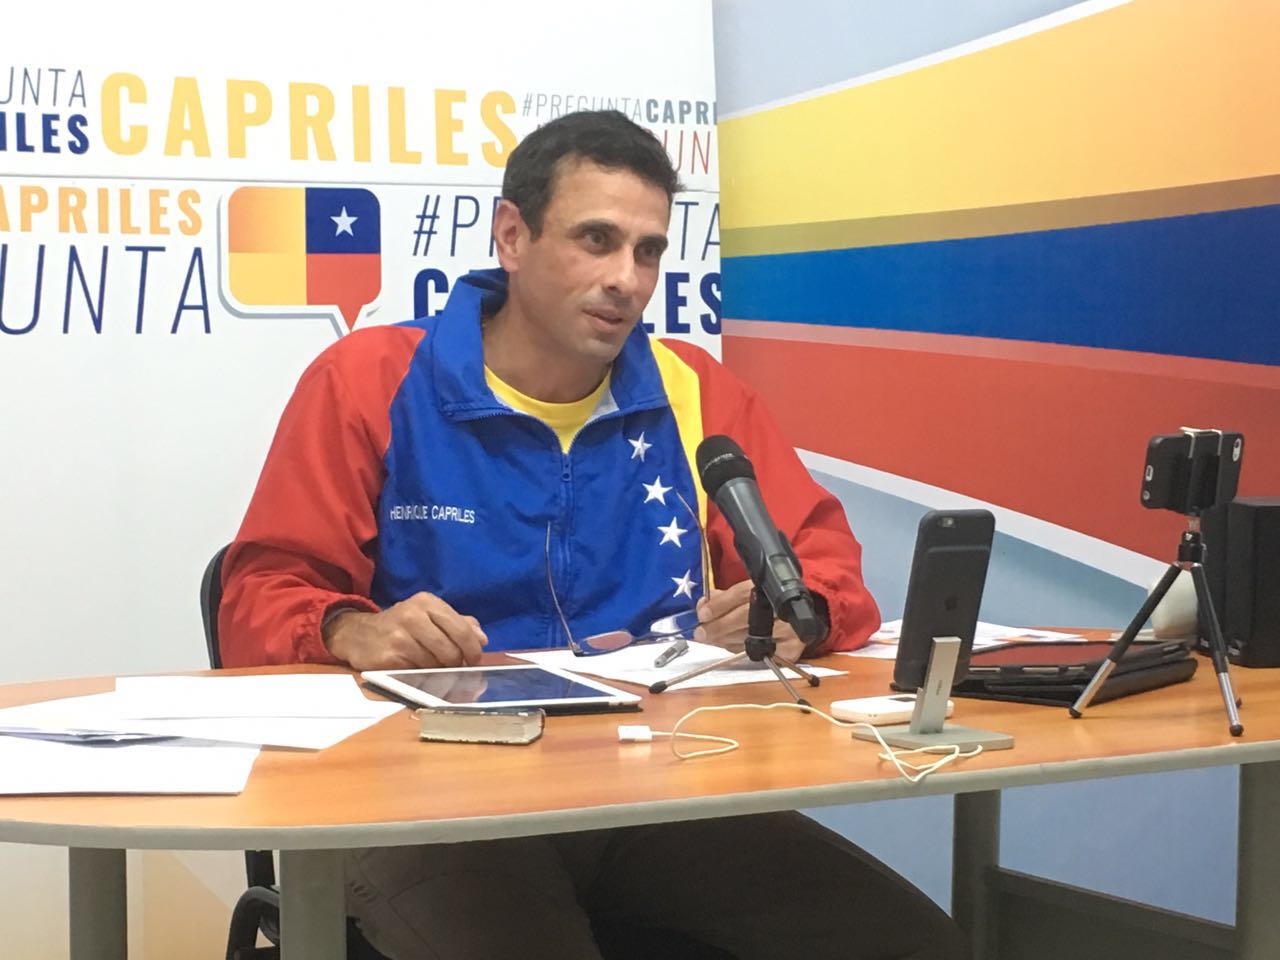 Capriles: El reto es que más de 1 millón de personas asistan a Toma de Caracas